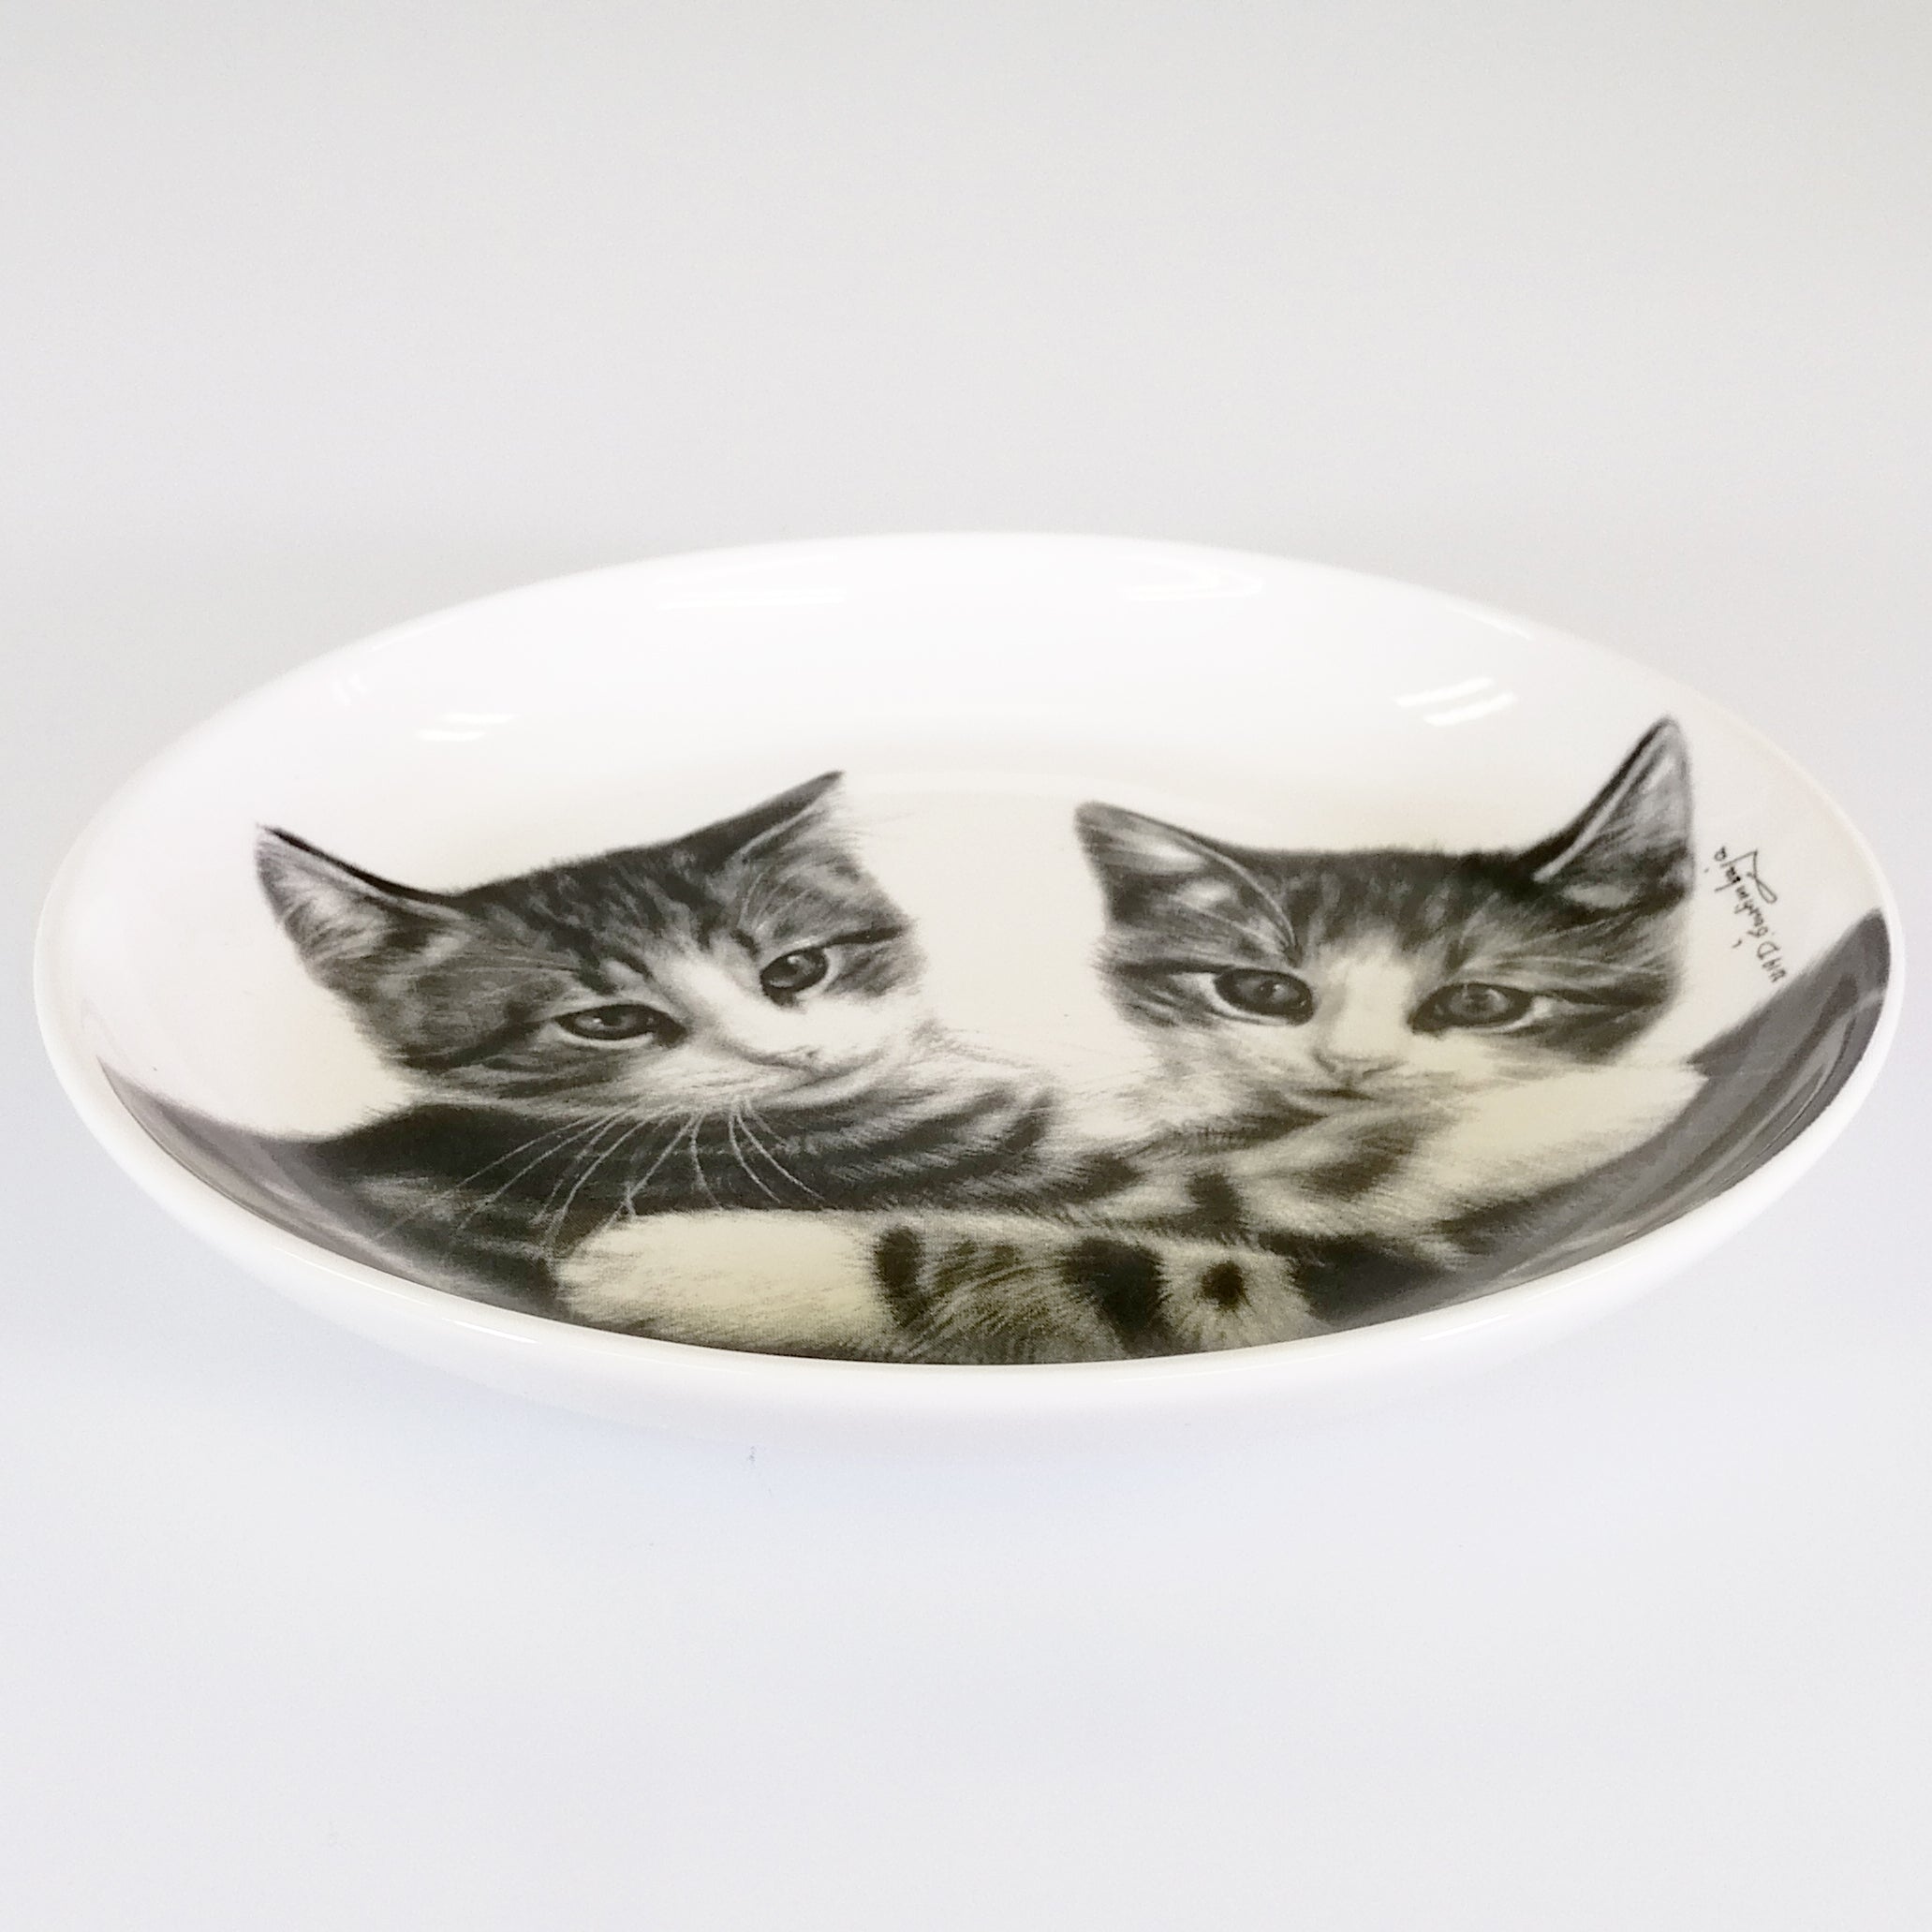 Feline Friends - Cuddling Kittens - Trinket Dish